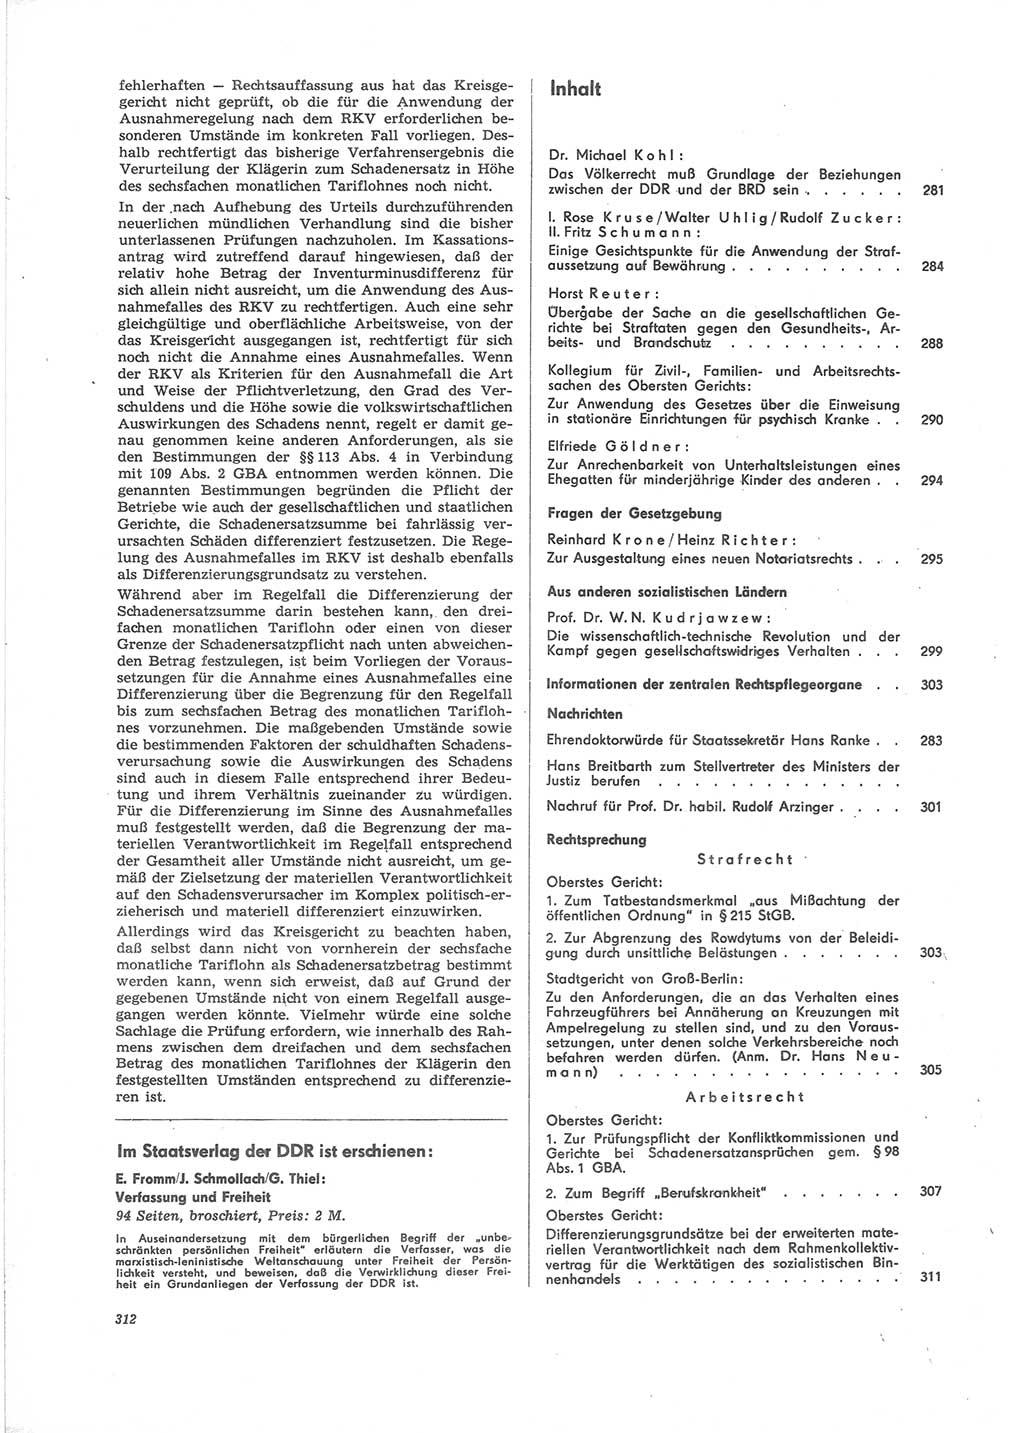 Neue Justiz (NJ), Zeitschrift für Recht und Rechtswissenschaft [Deutsche Demokratische Republik (DDR)], 24. Jahrgang 1970, Seite 312 (NJ DDR 1970, S. 312)